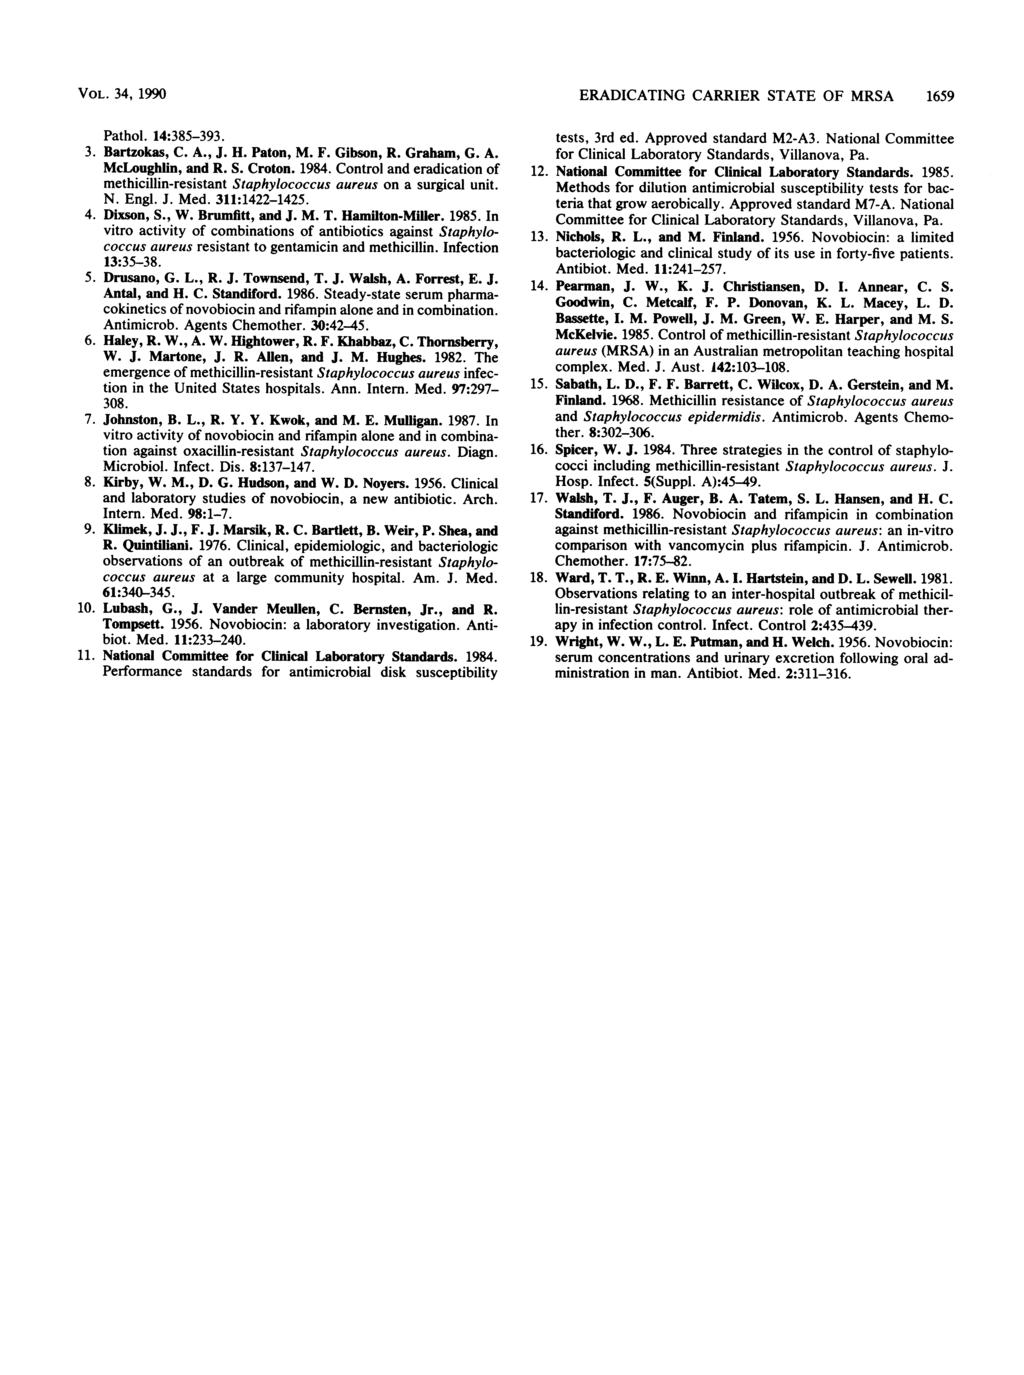 VOL. 34, 1990 Pathol. 14:385-393. 3. Bartzokas, C. A., J. H. Paton, M. F. Gibson, R. Graham, G. A. McLoughlin, and R. S. Croton. 1984.